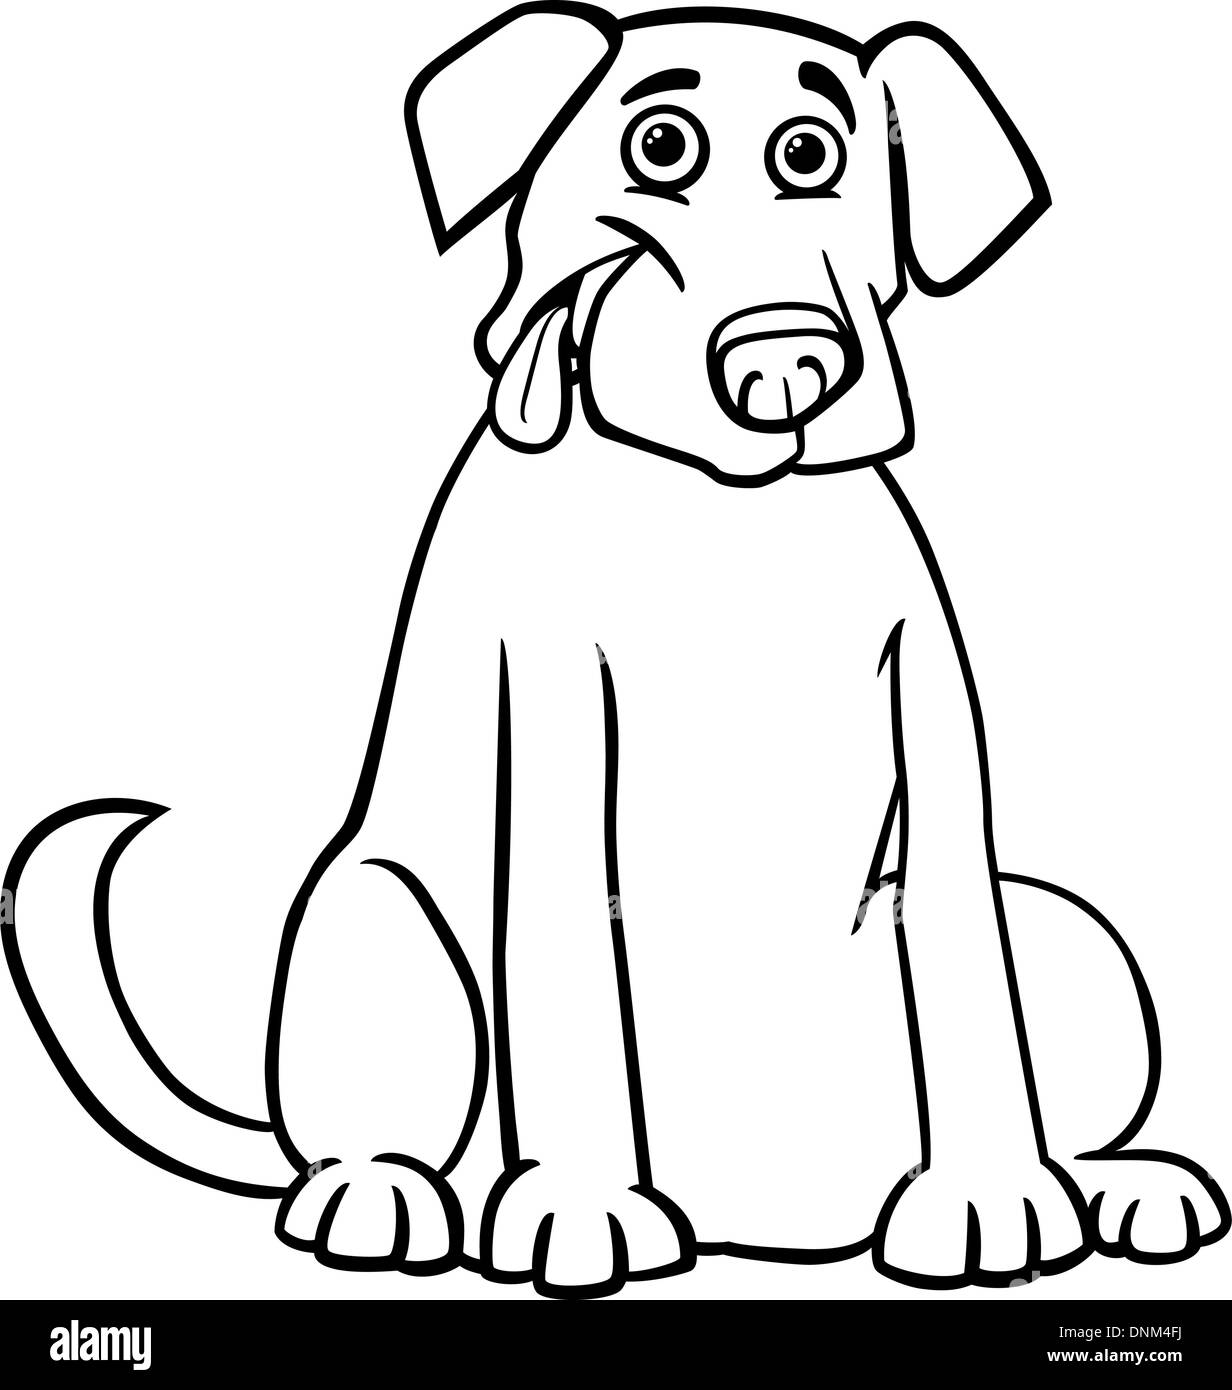 Schwarz / Weiß Cartoon Illustration der lustige reinrassige Labrador Retriever Hund für Kinder Malbuch Stock Vektor